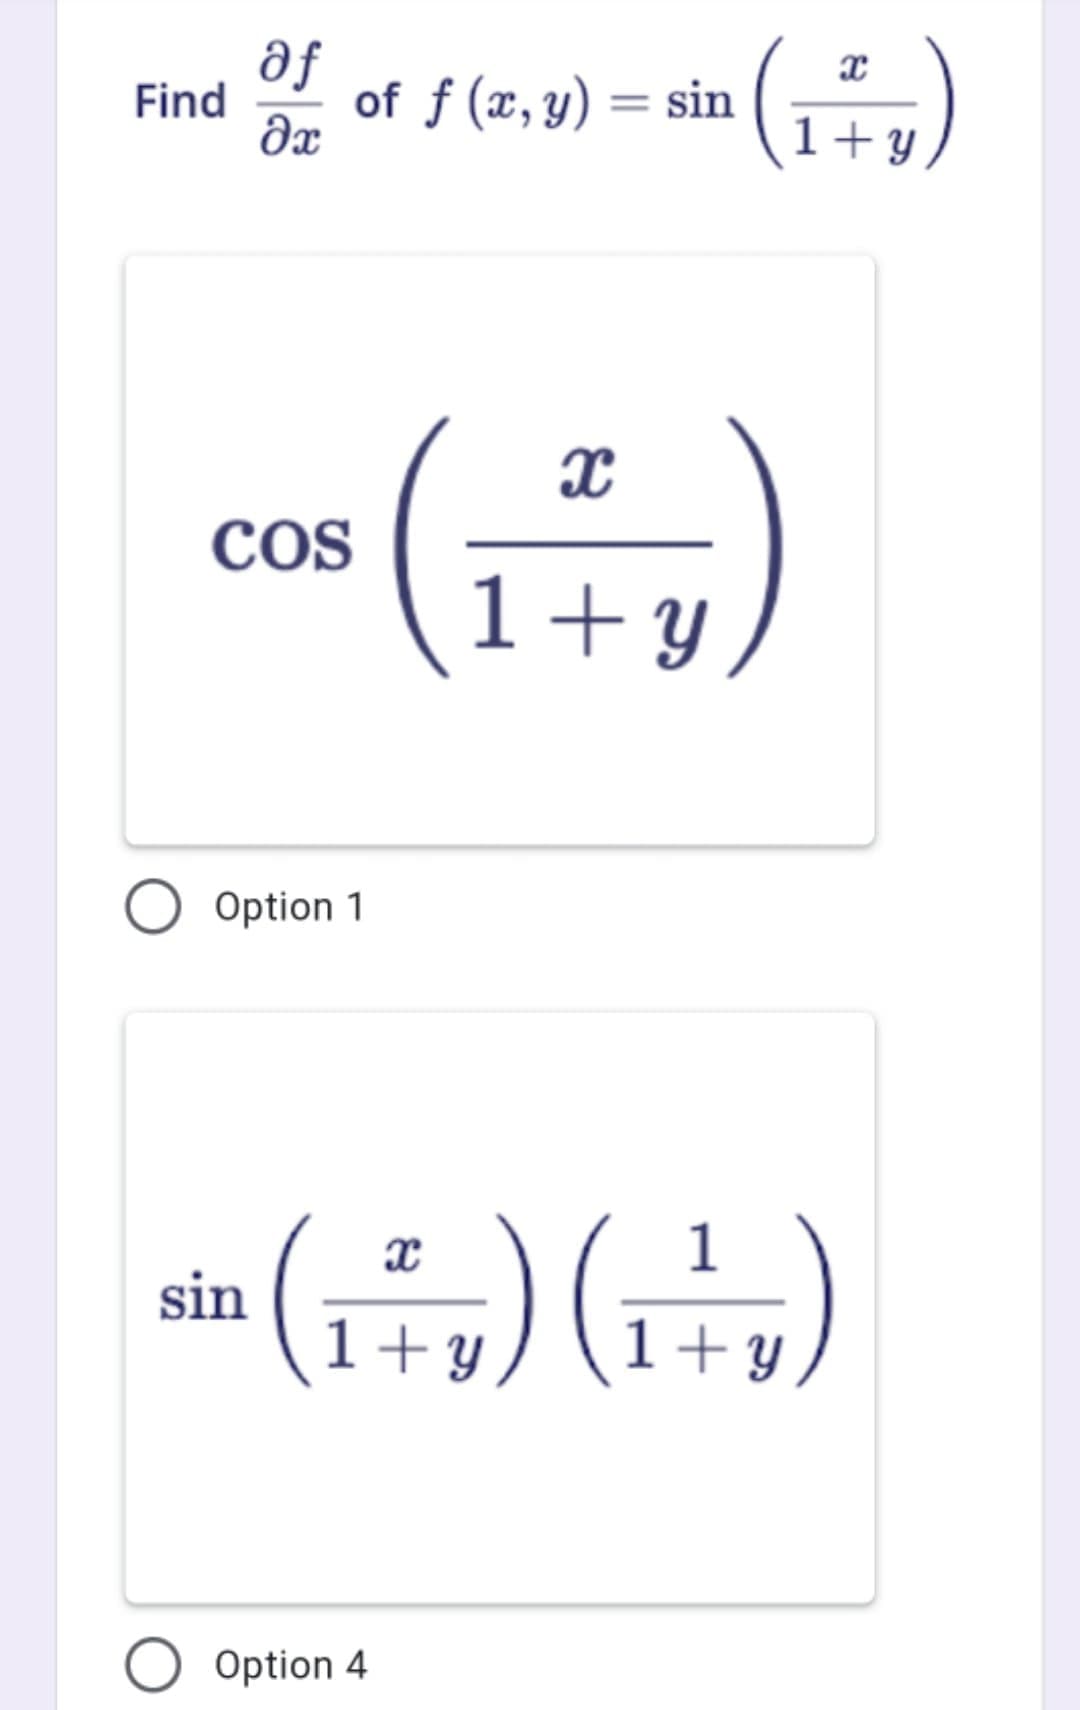 af
Find
of f (x, y) = sin
%3D
Əx
1+ y
COS
1+y
Option 1
sin ()G)
1
1+Y
1+ y
Option 4
